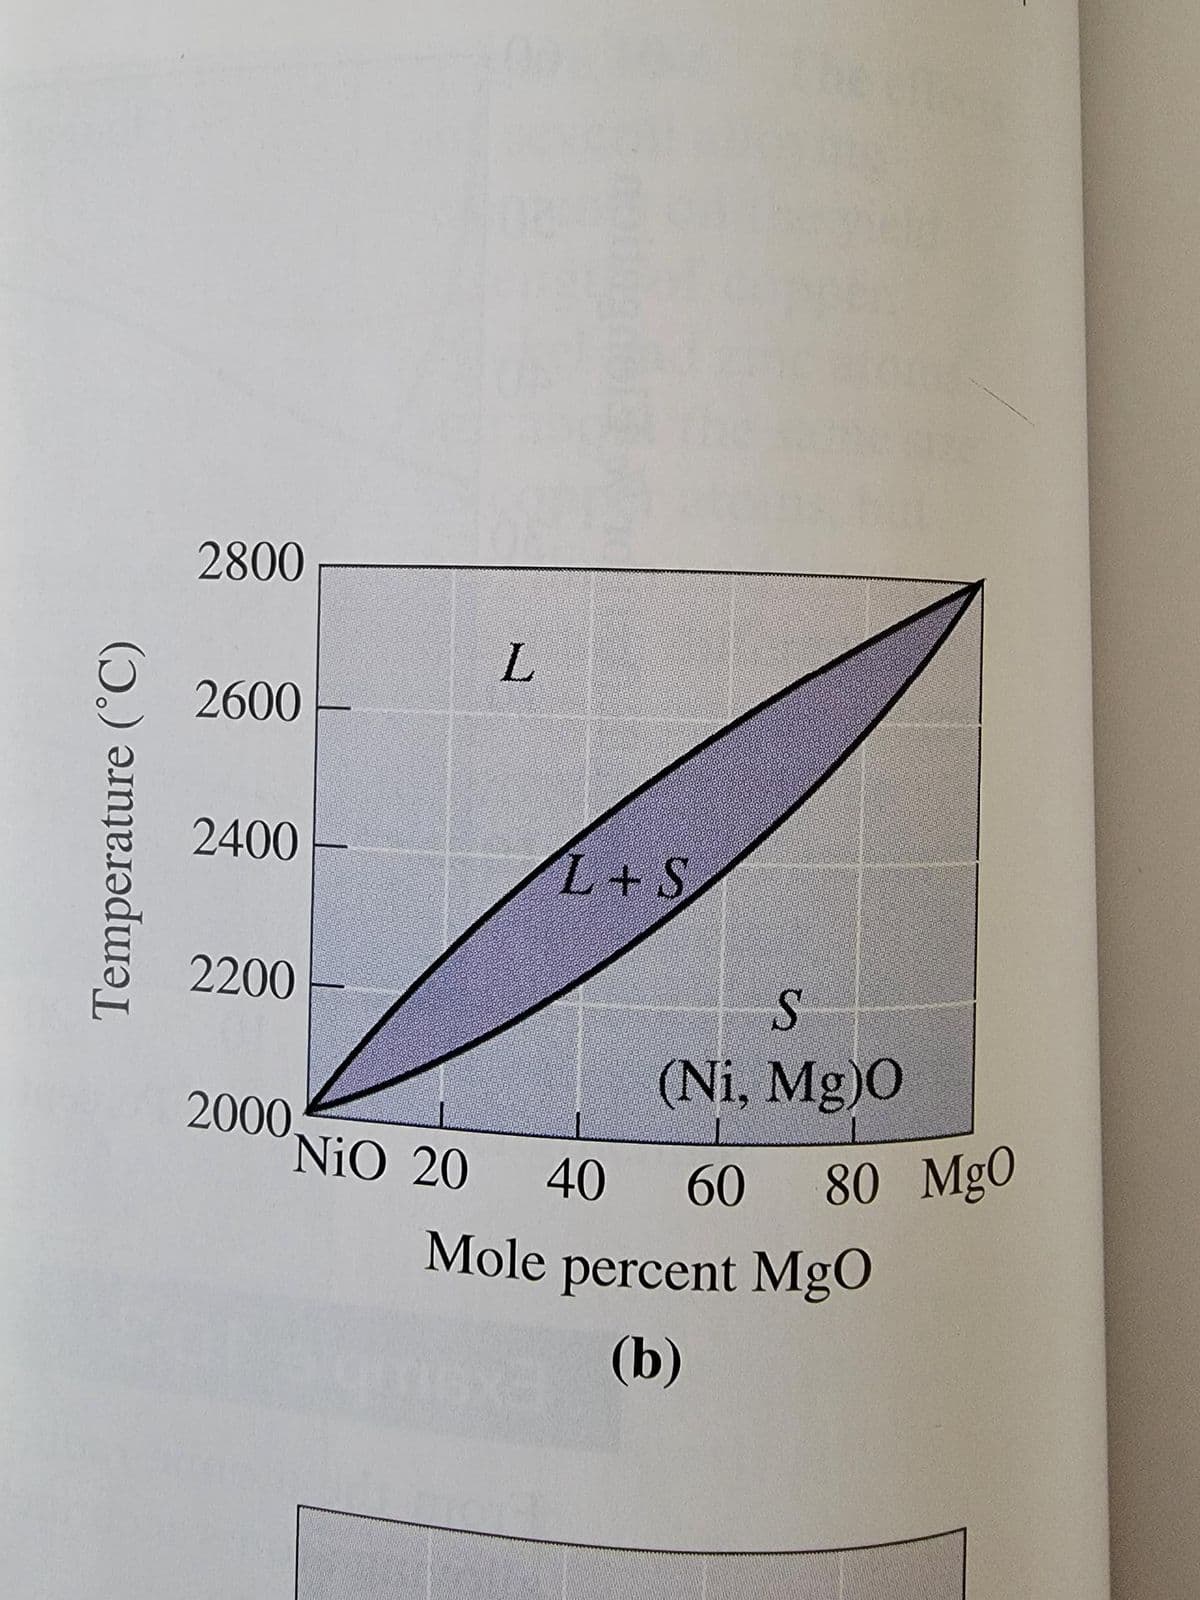 Temperature (°C)
2800
2600
2400
2200
L
2000.
L+S
S
(Ni, Mg)0
NiO 20 40 60 80 MgO
Mole percent MgO
(b)